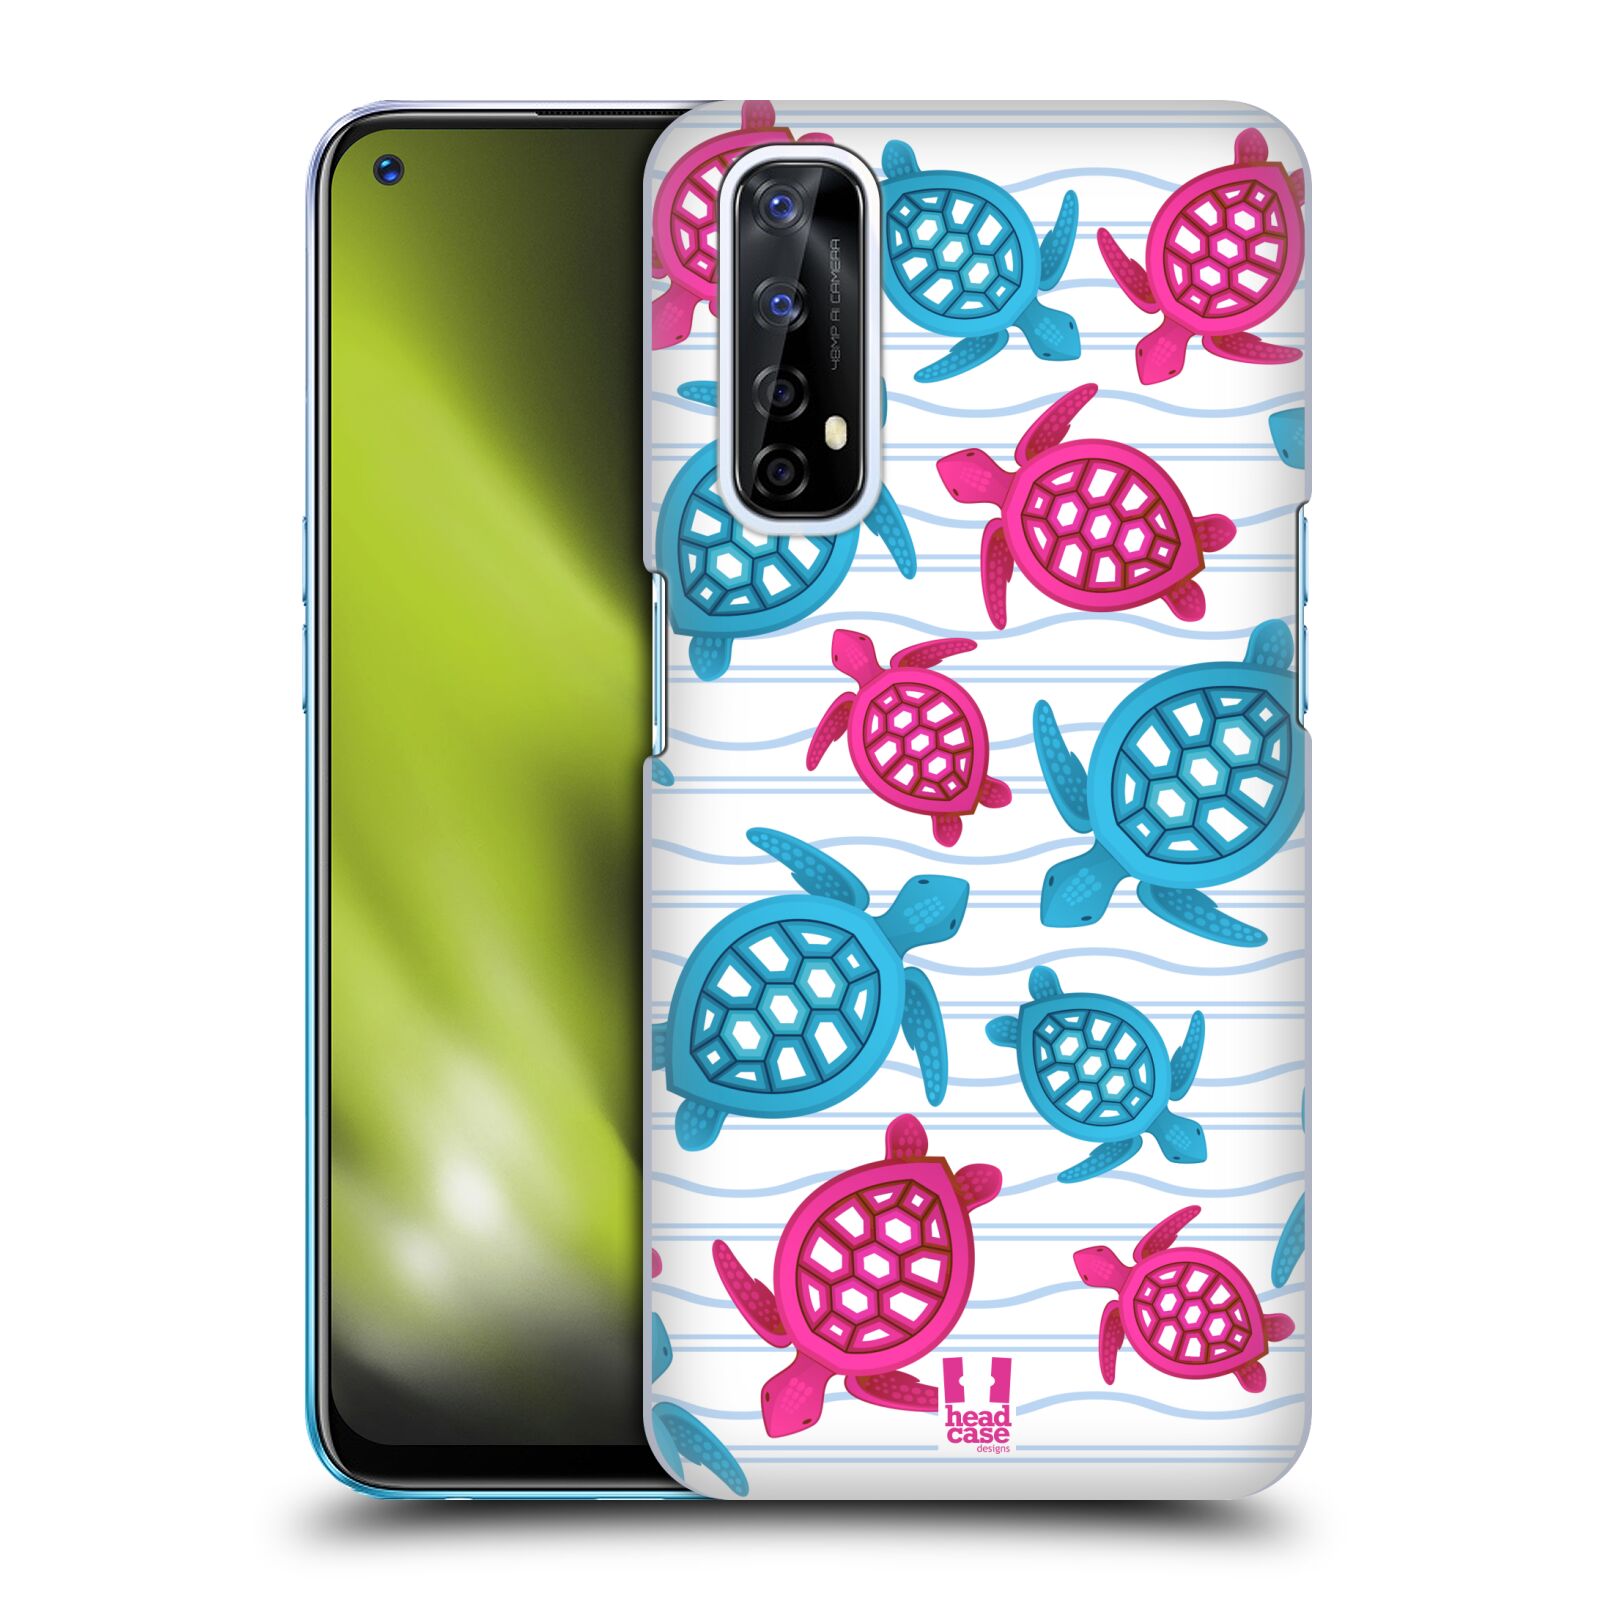 Zadní obal pro mobil Realme 7 - HEAD CASE - kreslený mořský vzor želvičky